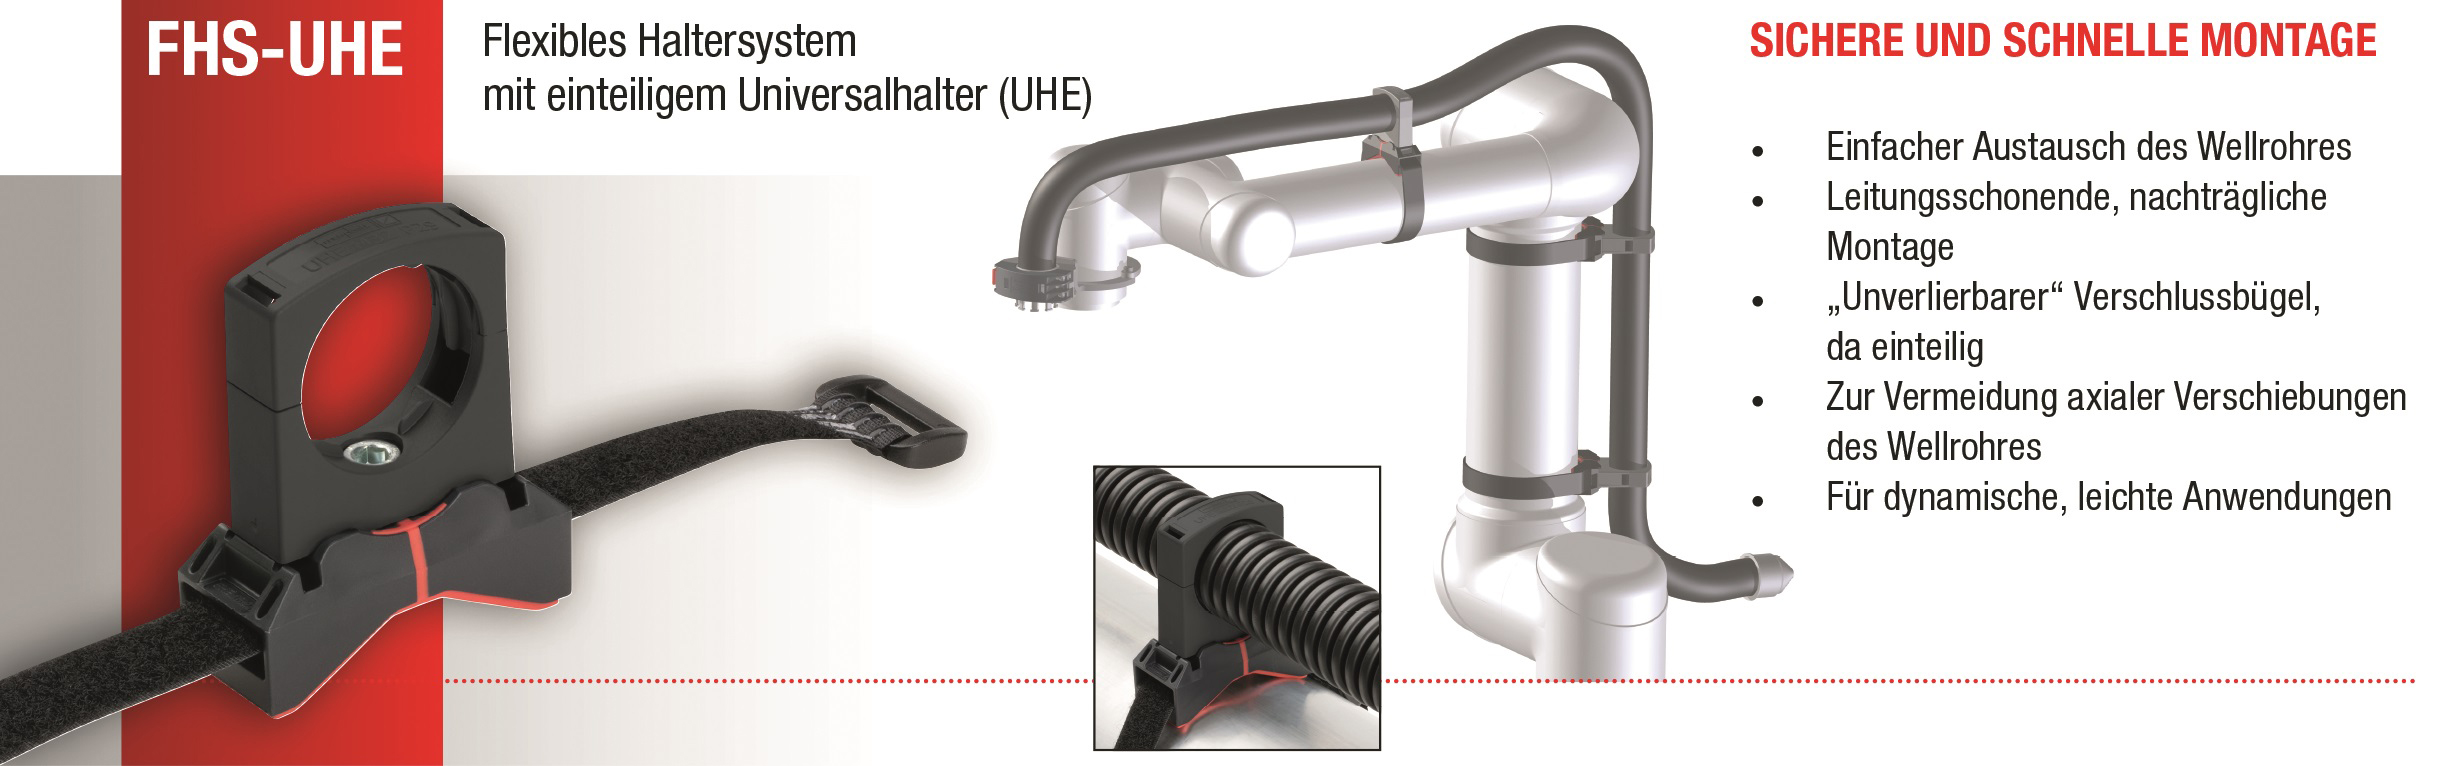 Abb.4: Flexibles Haltersystem mit einteiligem Universalhalter (FHS-UHE).